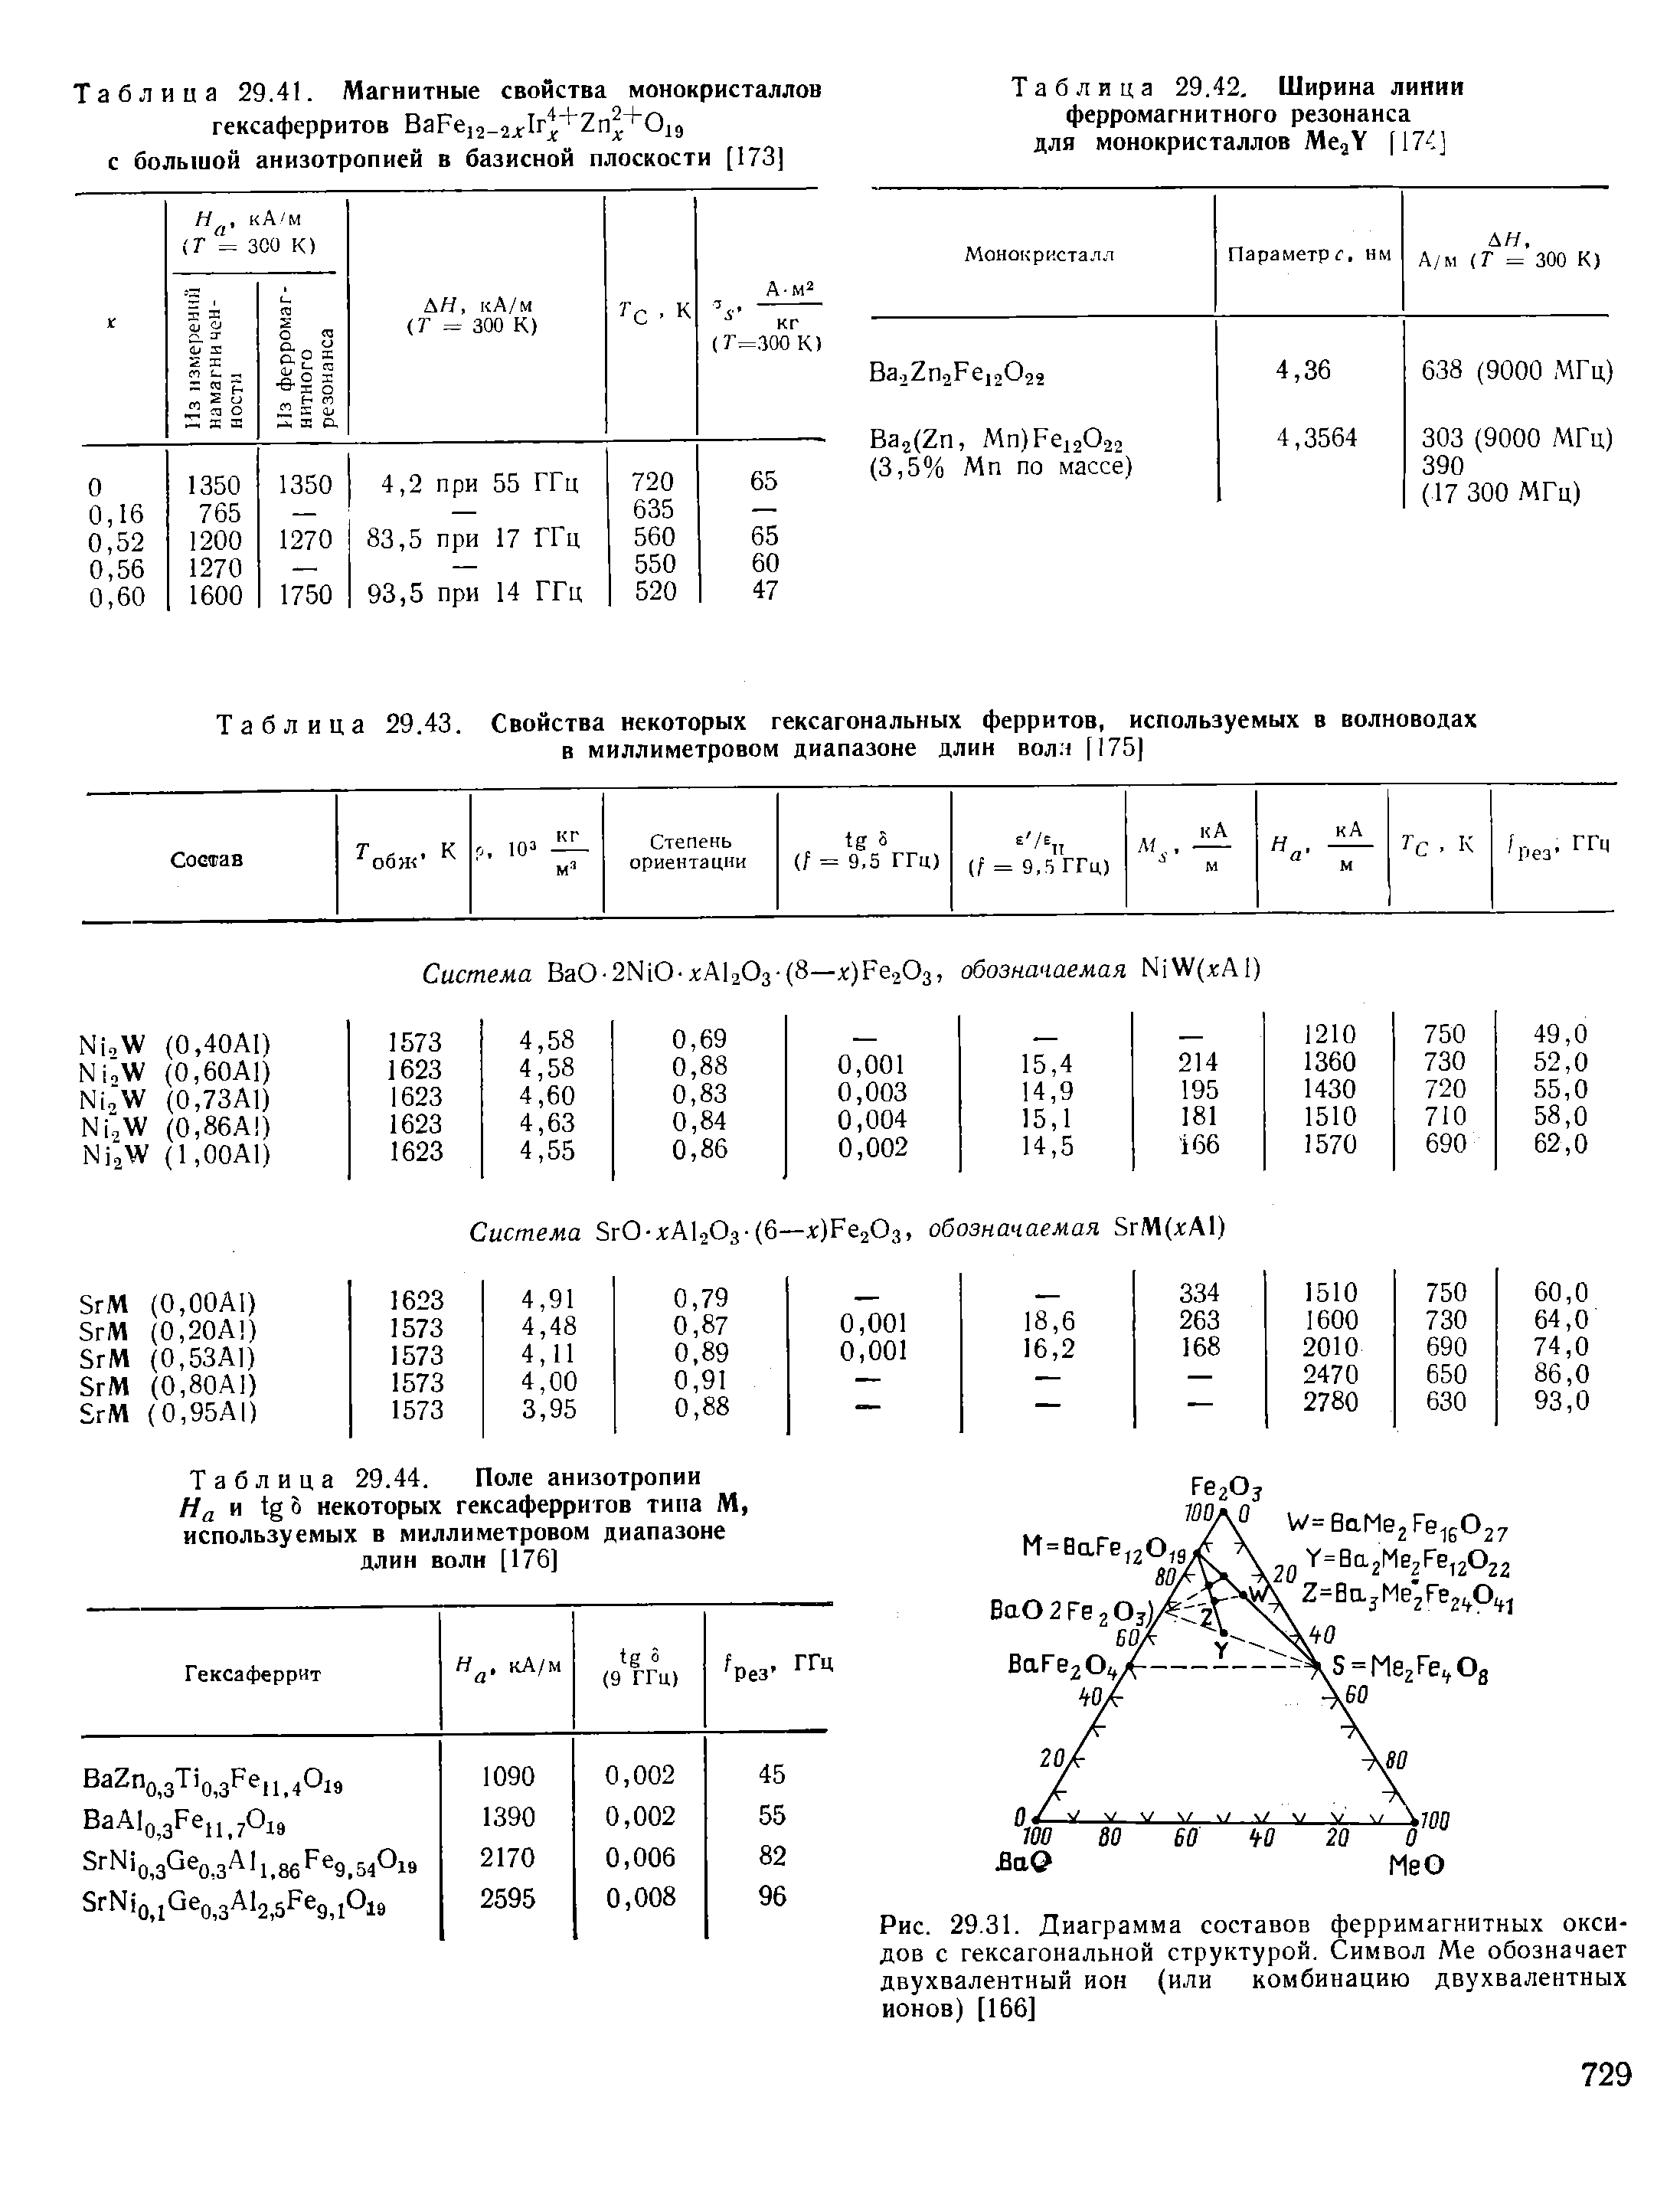 Таблица 29.44. Поле анизотропии //д и tg некоторых гексаферритов типа М, используемых в миллиметровом диапазоне длин волн [176]
